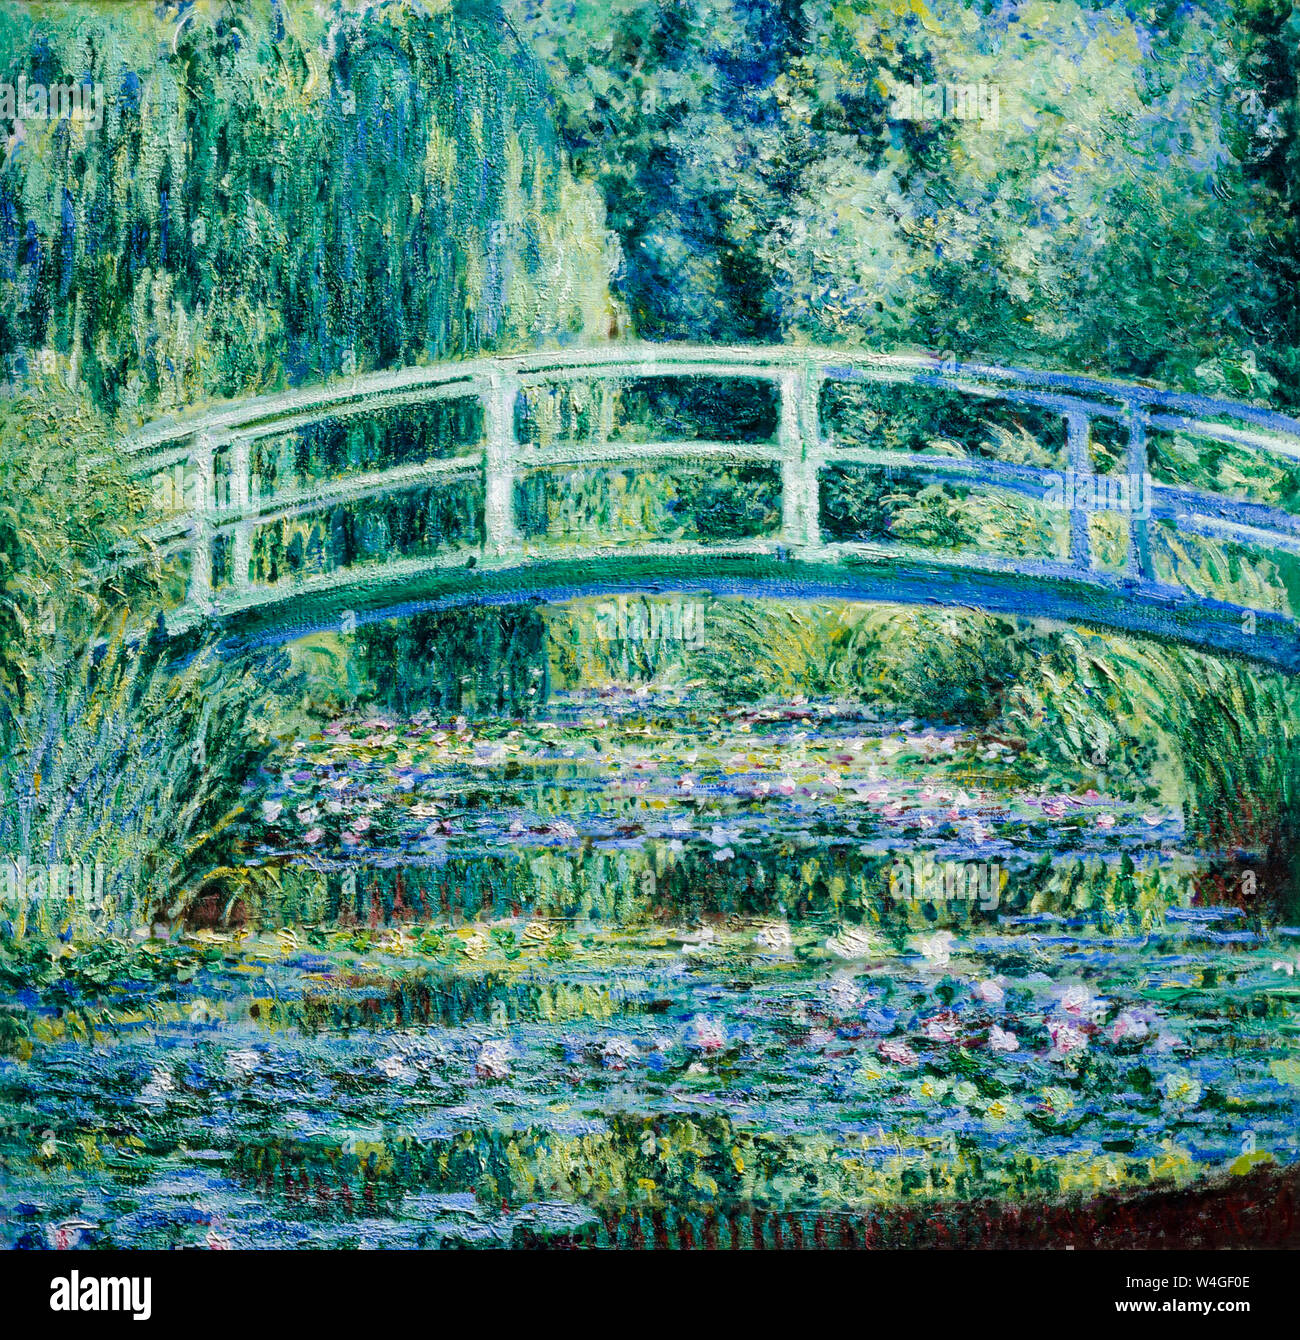 Claude Monet, peinture de paysages, les nénuphars et le pont japonais, 1899 Banque D'Images